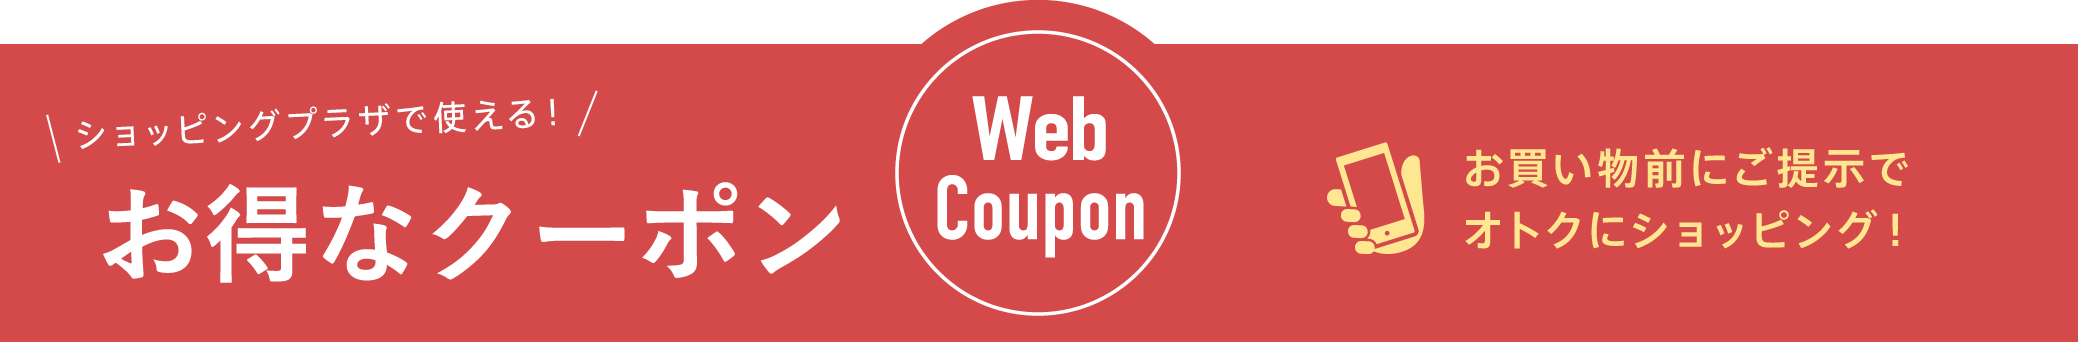 web coupon karuizawa